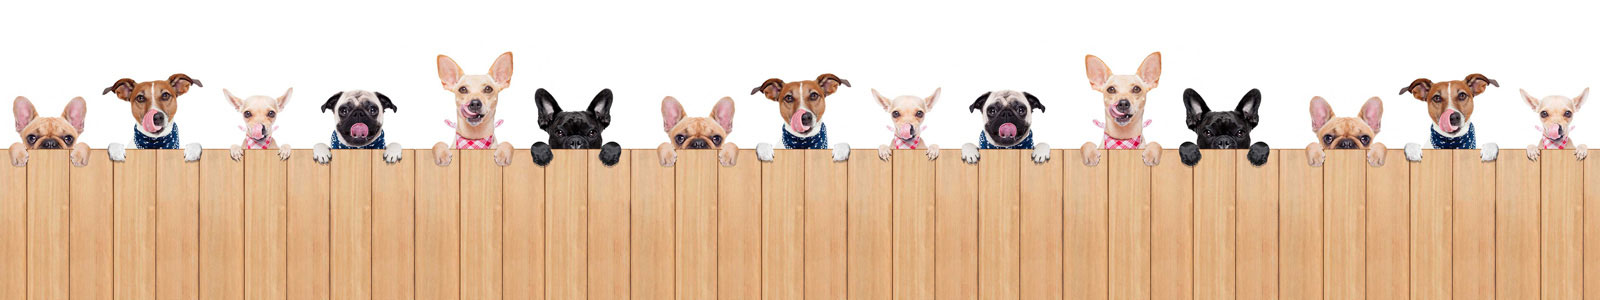 №4169 - Веселые облизывающиеся собачки за деревянным ограждением